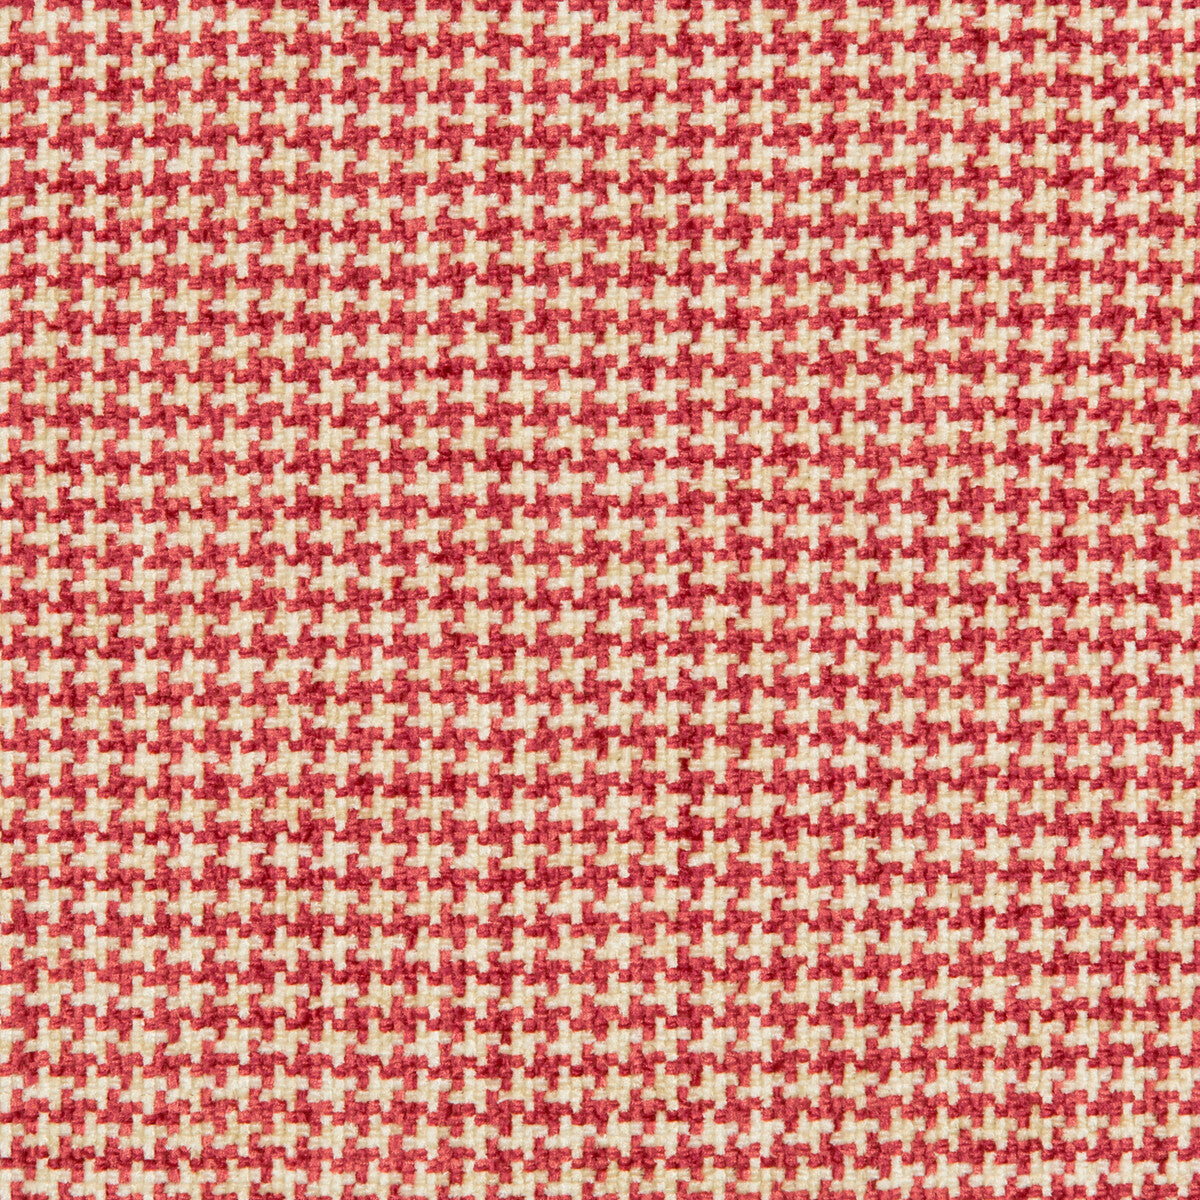 Kravet Basics fabric in 35778-97 color - pattern 35778.97.0 - by Kravet Basics